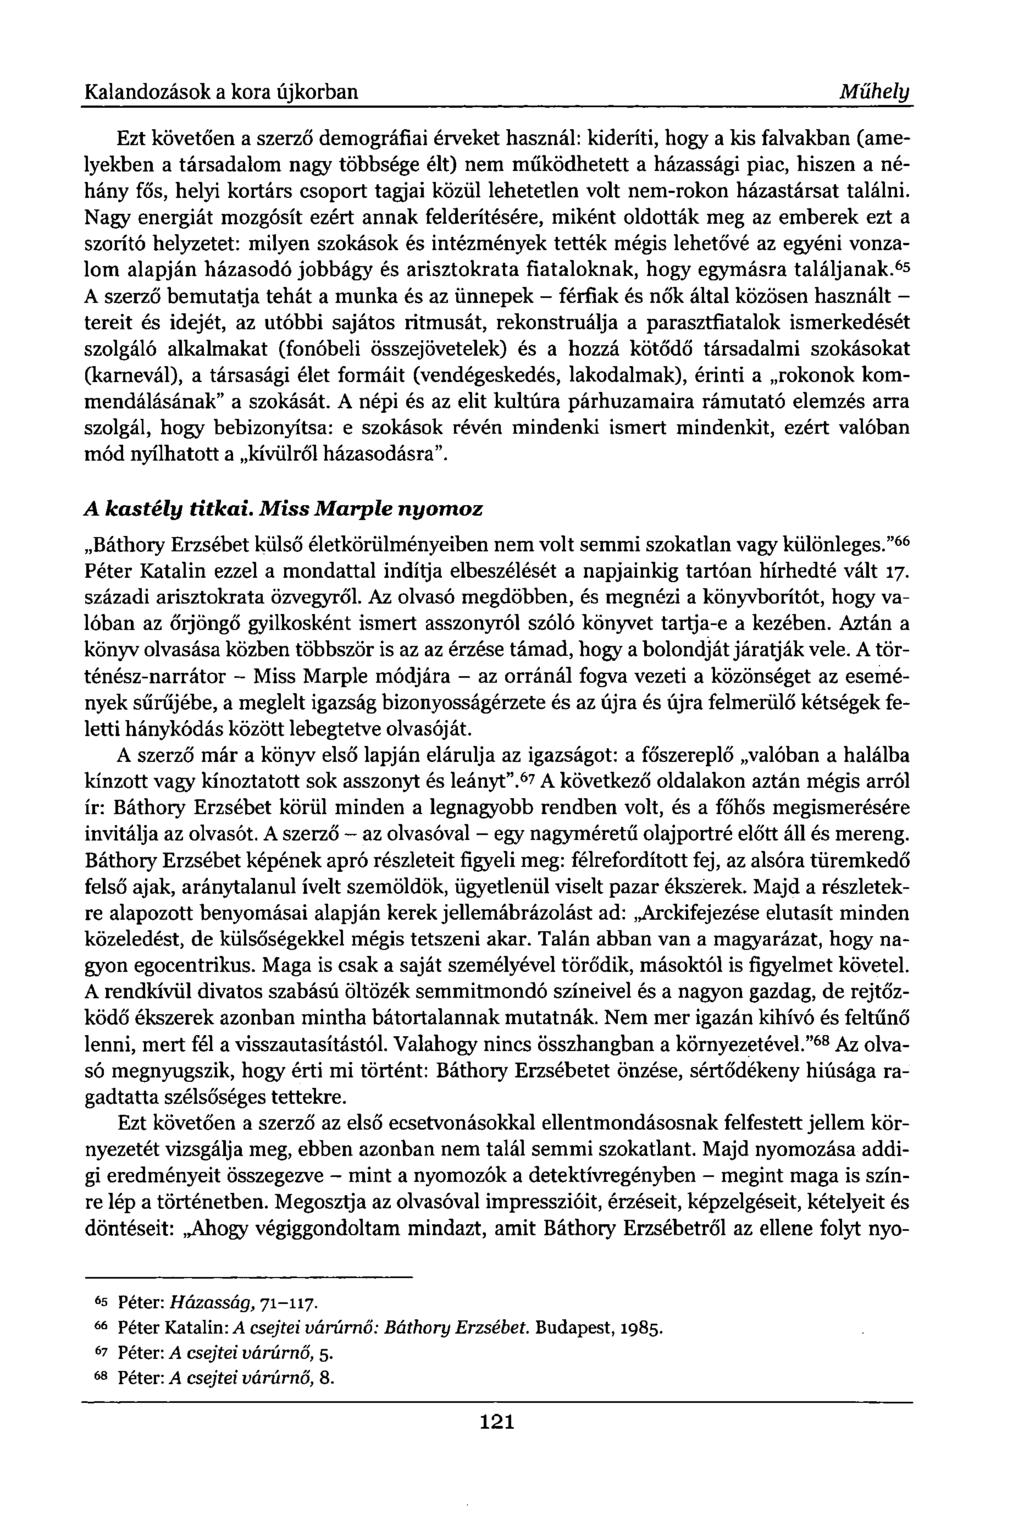 Pest Megyei Hírlap, június ( évfolyam, szám) | Könyvtár | Hungaricana